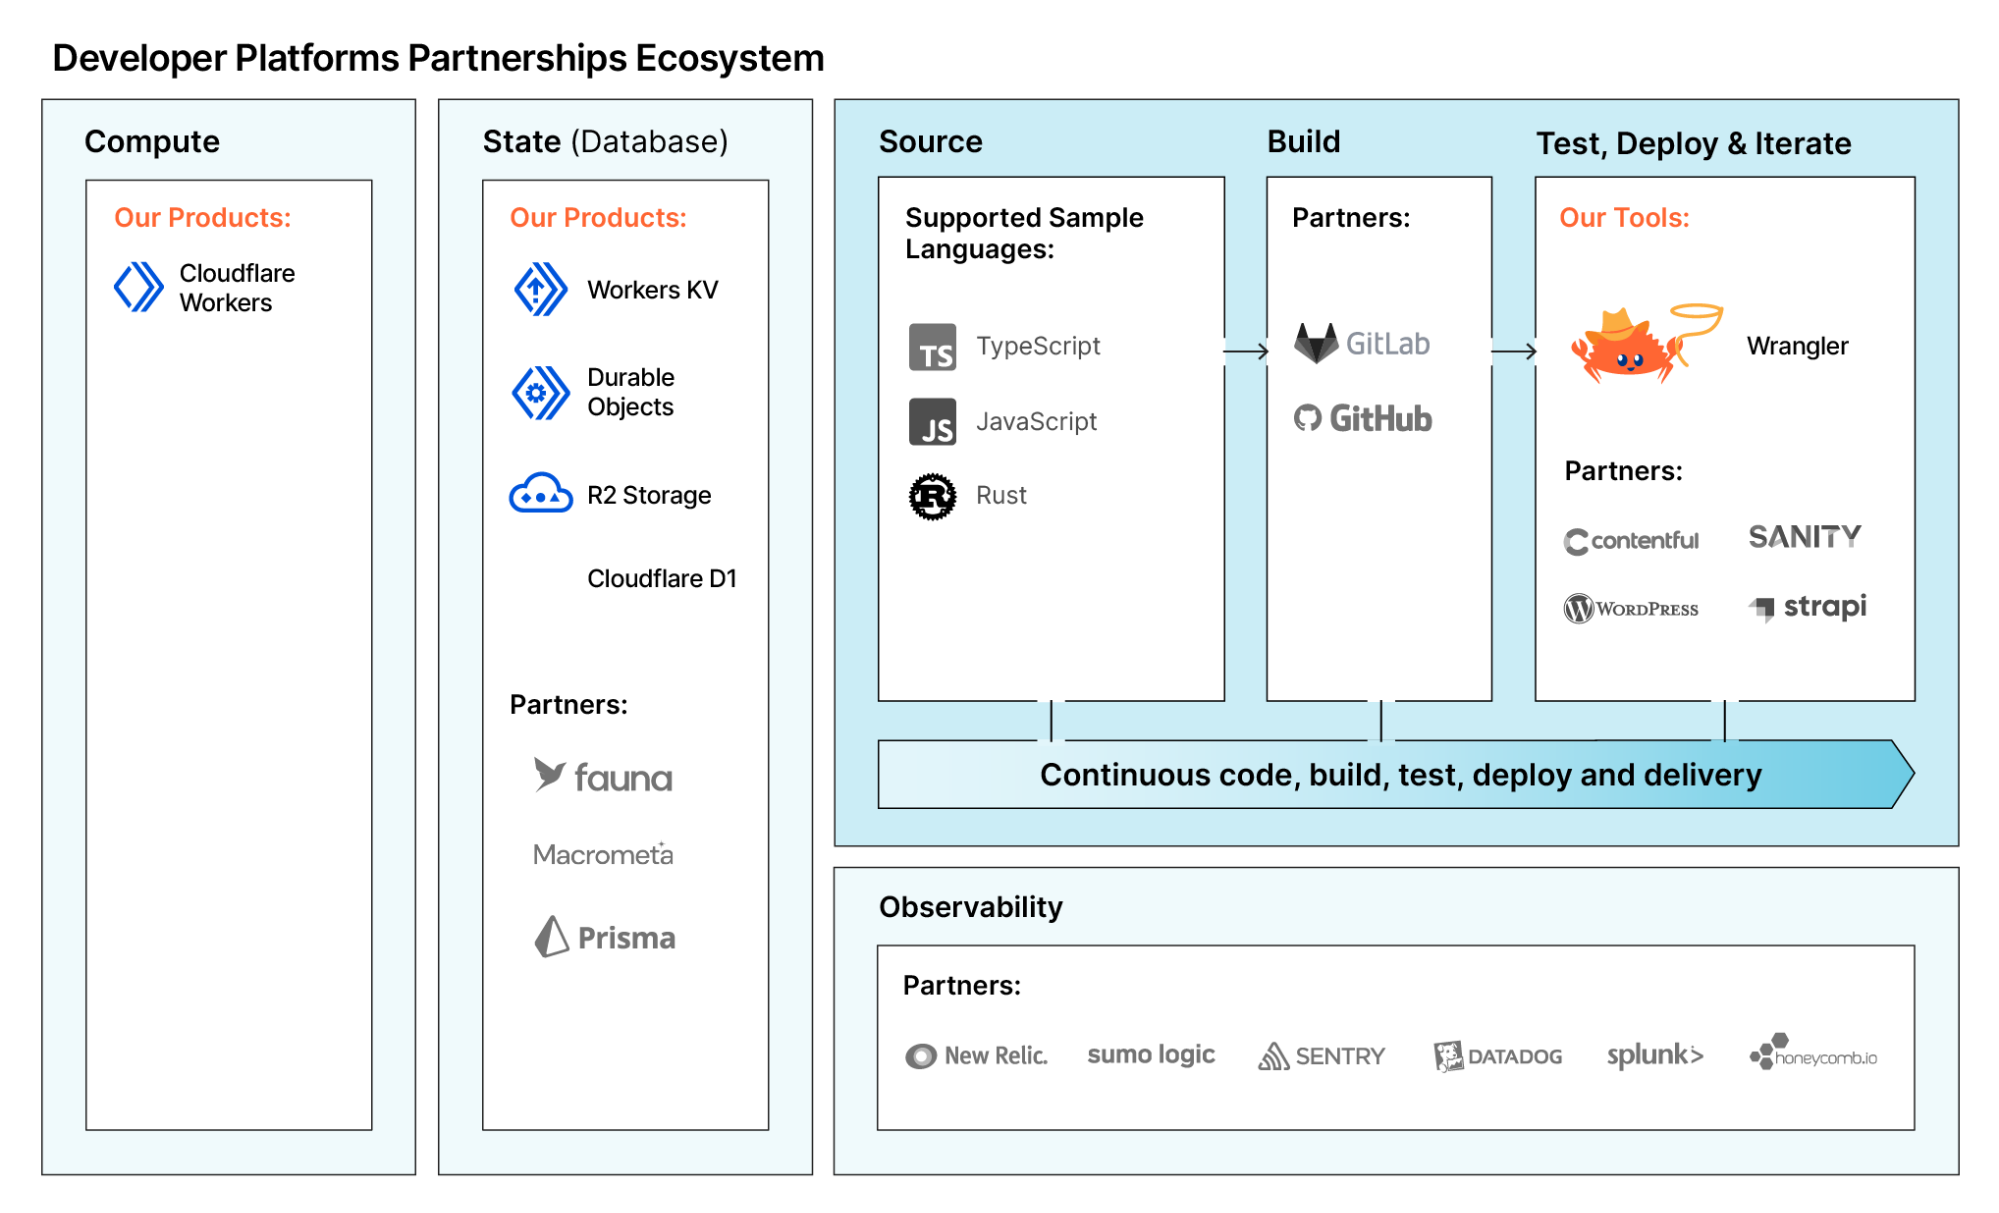 Our growing Developer Platform partner ecosystem